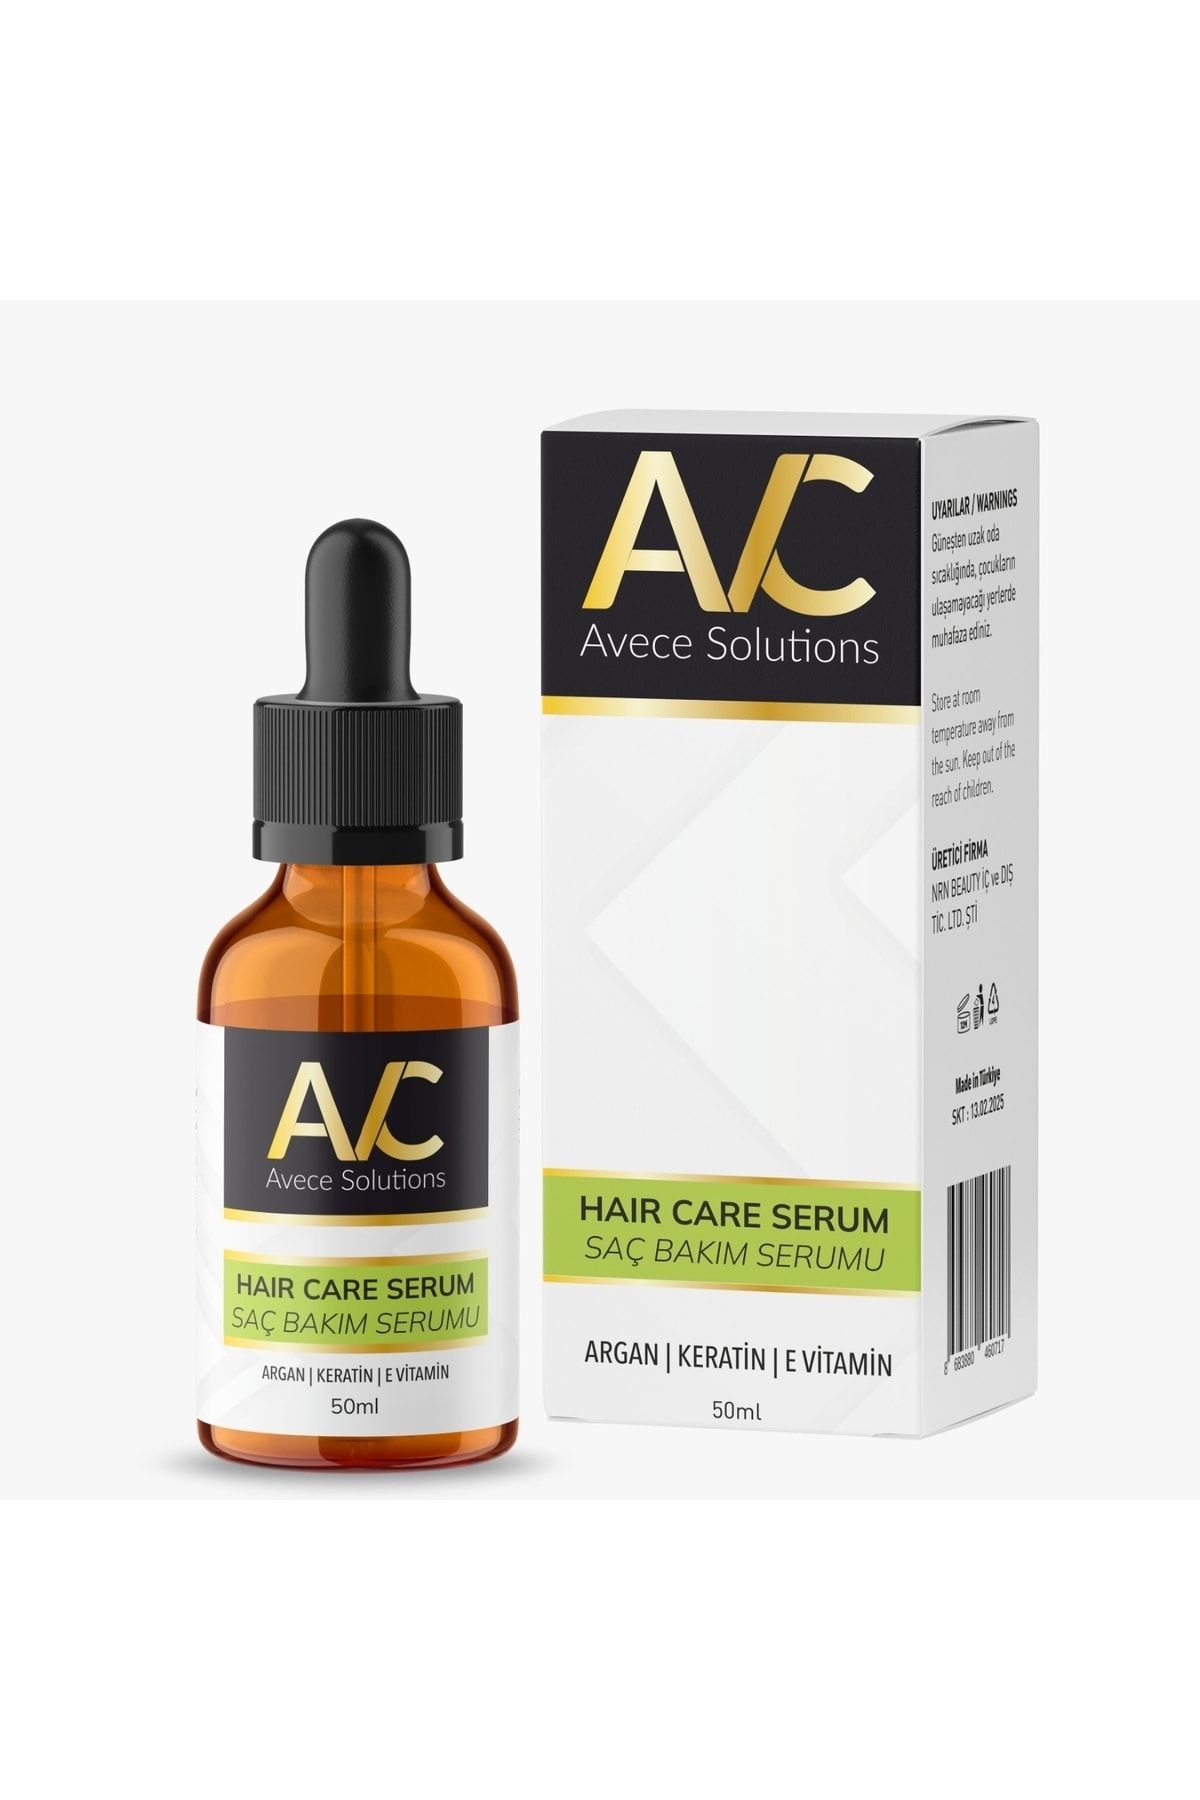 Avece Solutions Hızlı Saç Uzatma Ve Saç Çıkarma Serumu&argan-keratin-e Vitamini Ile Desteklenmiş Özel Formül 50 ml